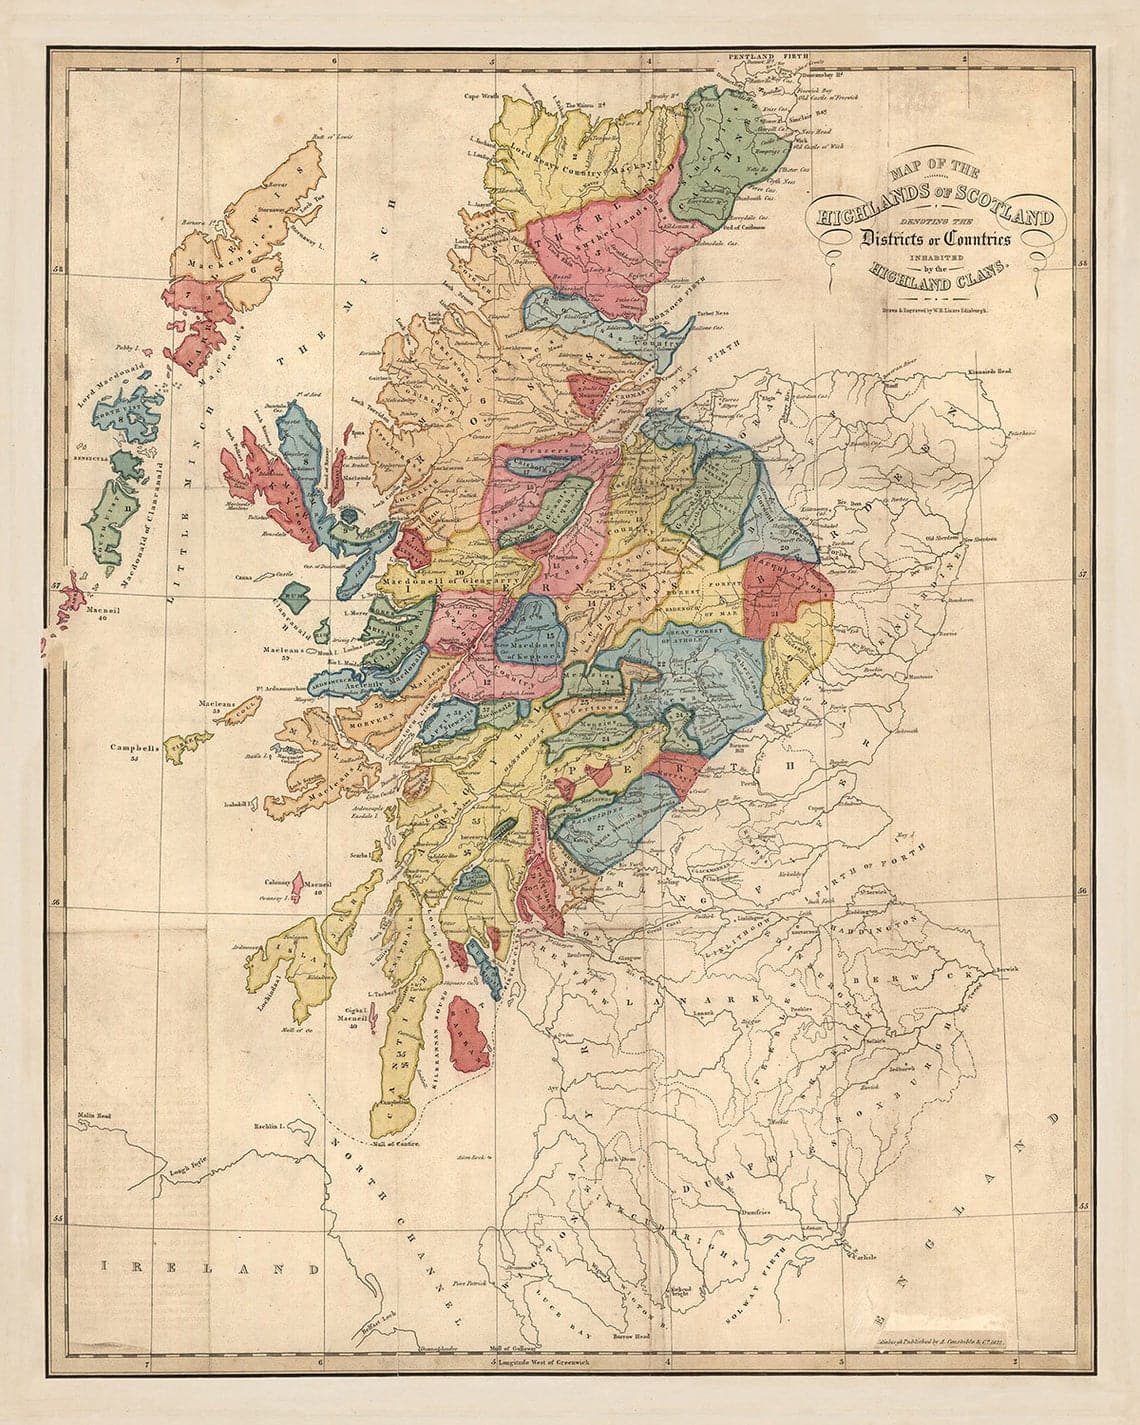 Mapa de clanes de Escocia - Raro mapa en color de las Tierras Altas de Escocia por WH Lizars, 1822